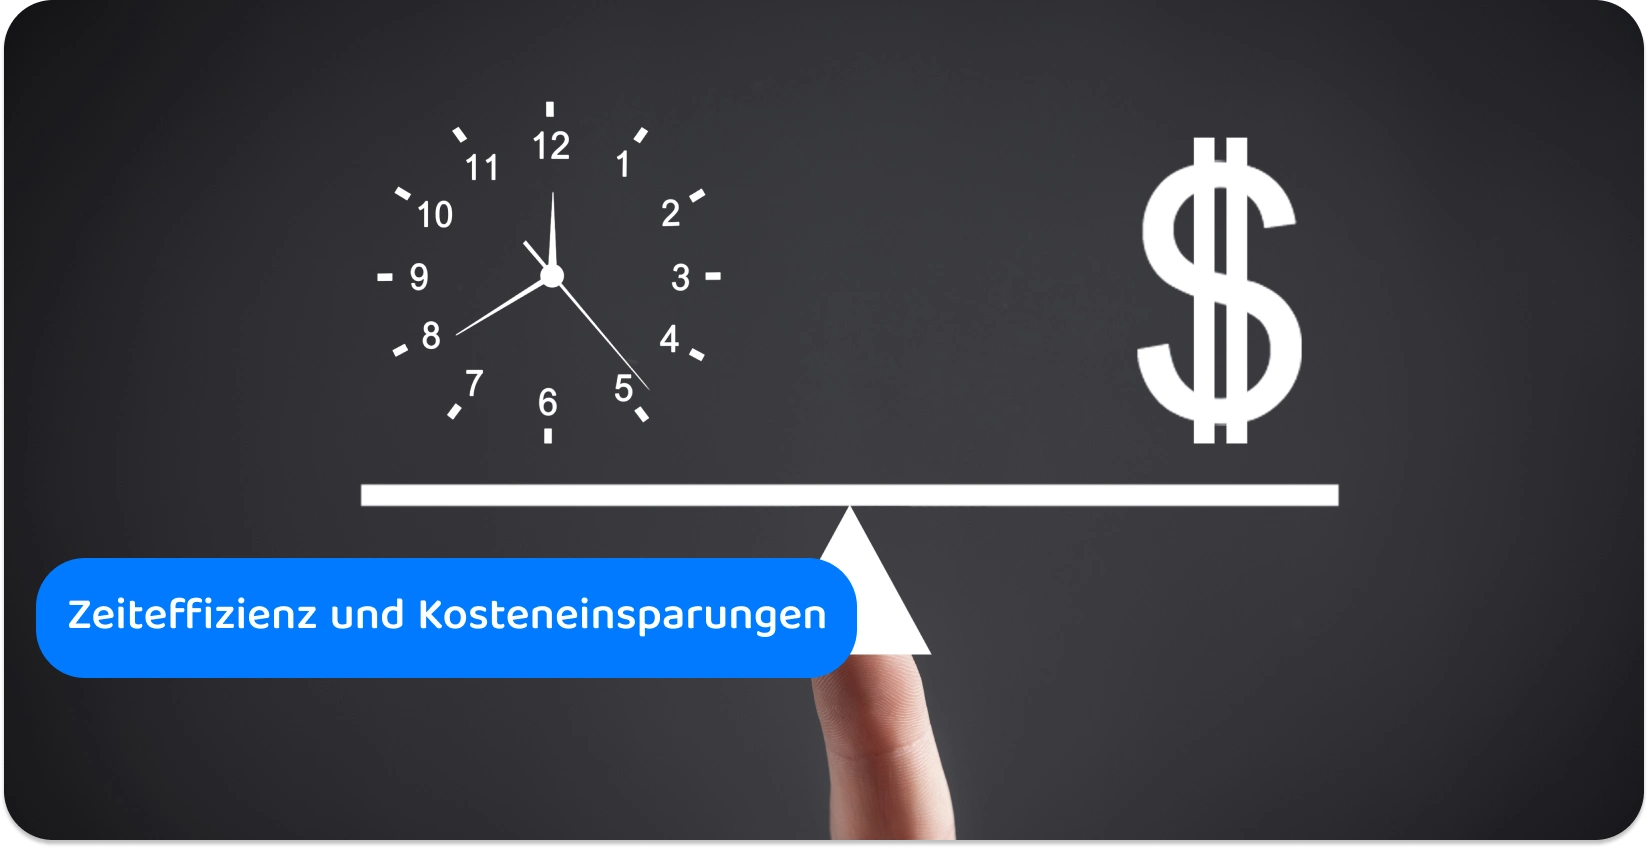 Eine ausgewogene Darstellung von Zeit und Geld, die die Effizienz und die Einsparungen hervorhebt, die durch Transkriptionsdienste erzielt werden.